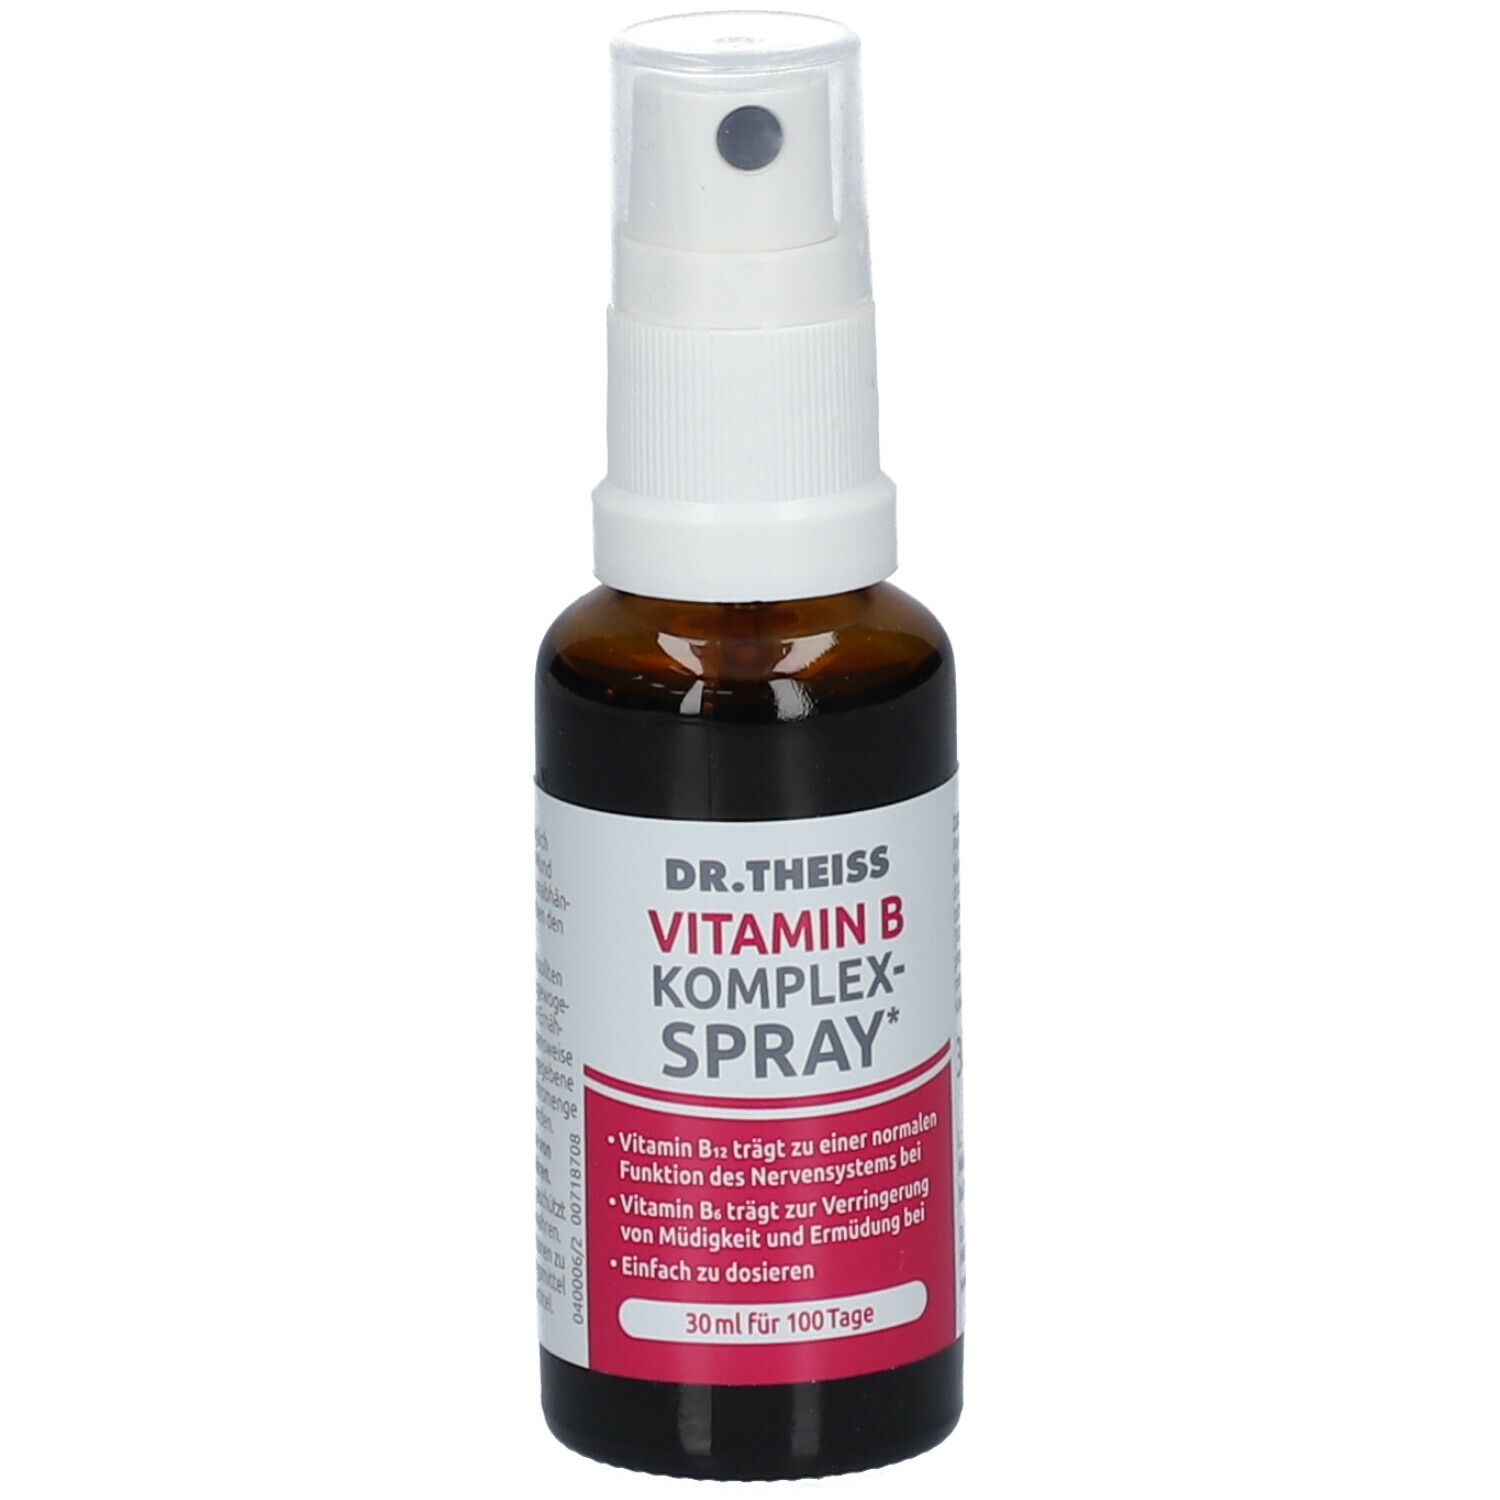 DR. THEISS Vitamin B Komplex-Spray